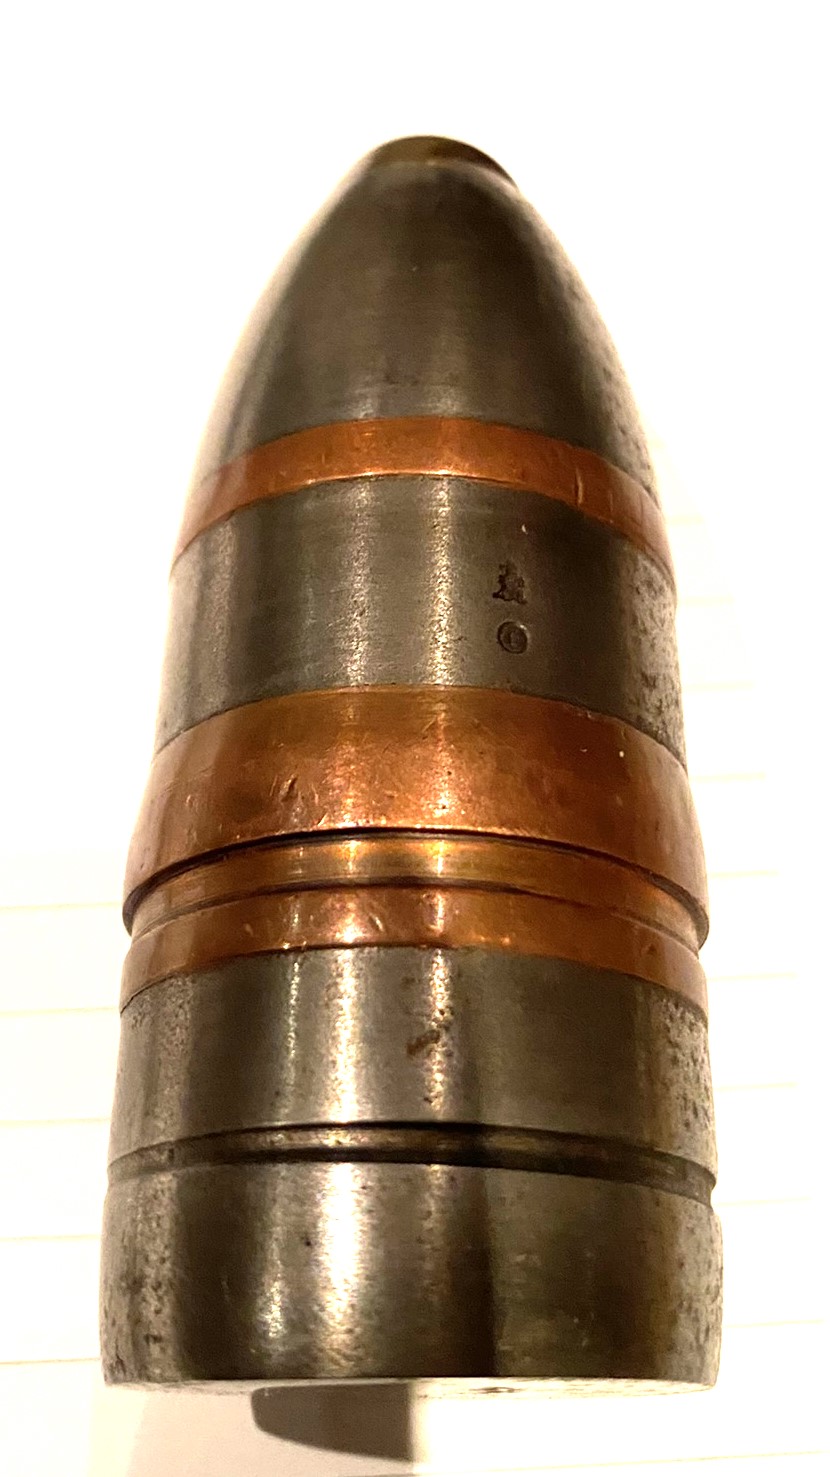 ./ammo/37mm/patroner/Granat-37mm-Kongsberg-1.JPG